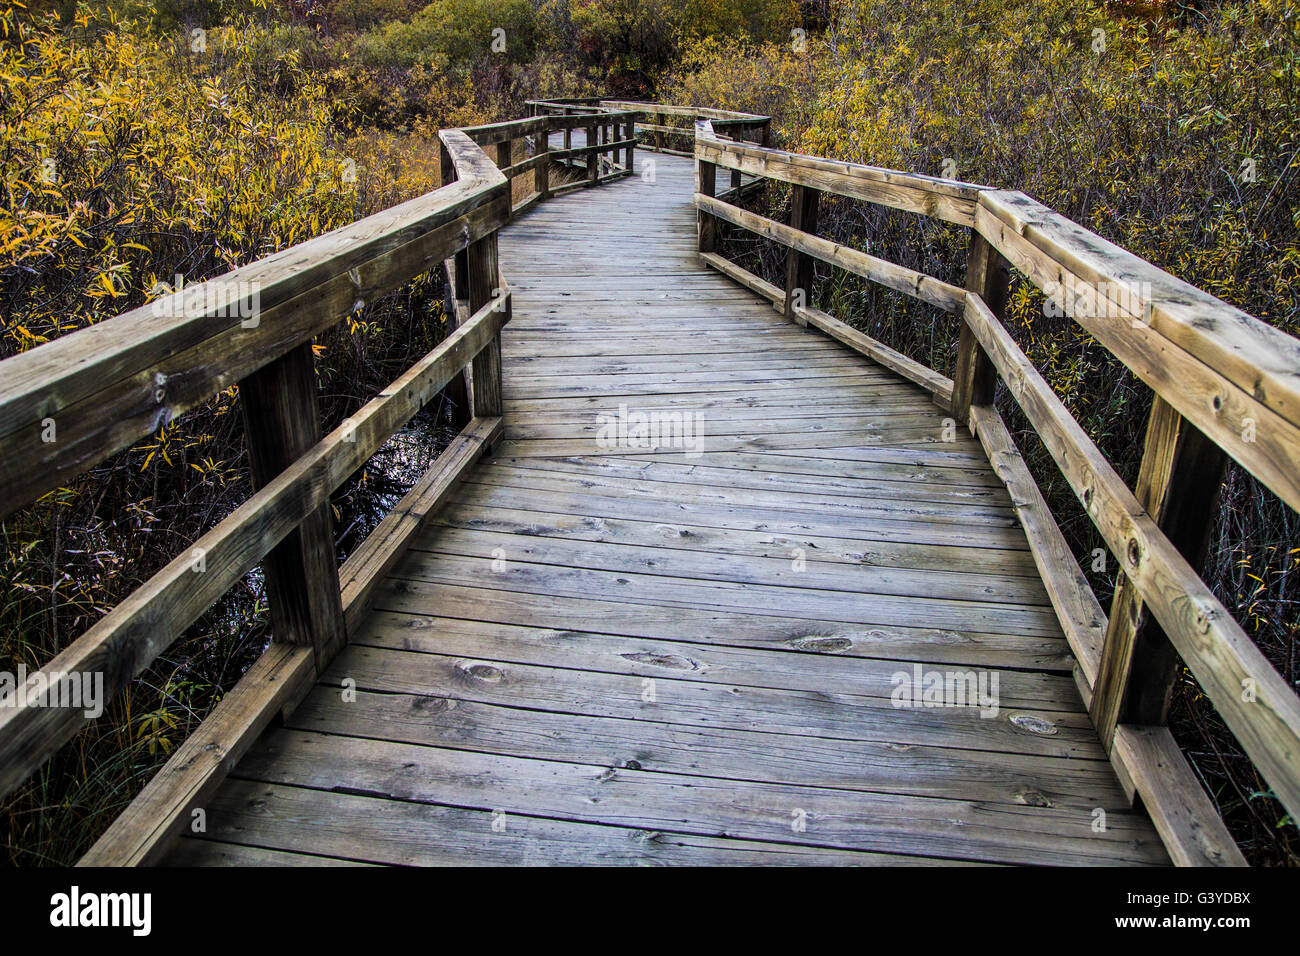 Il Lungomare di avvolgimento percorso attraverso le zone umide. Avvolgimento boardwalk trail attraverso una zona umida protetta habitat. Huron County Arboretum Foto Stock